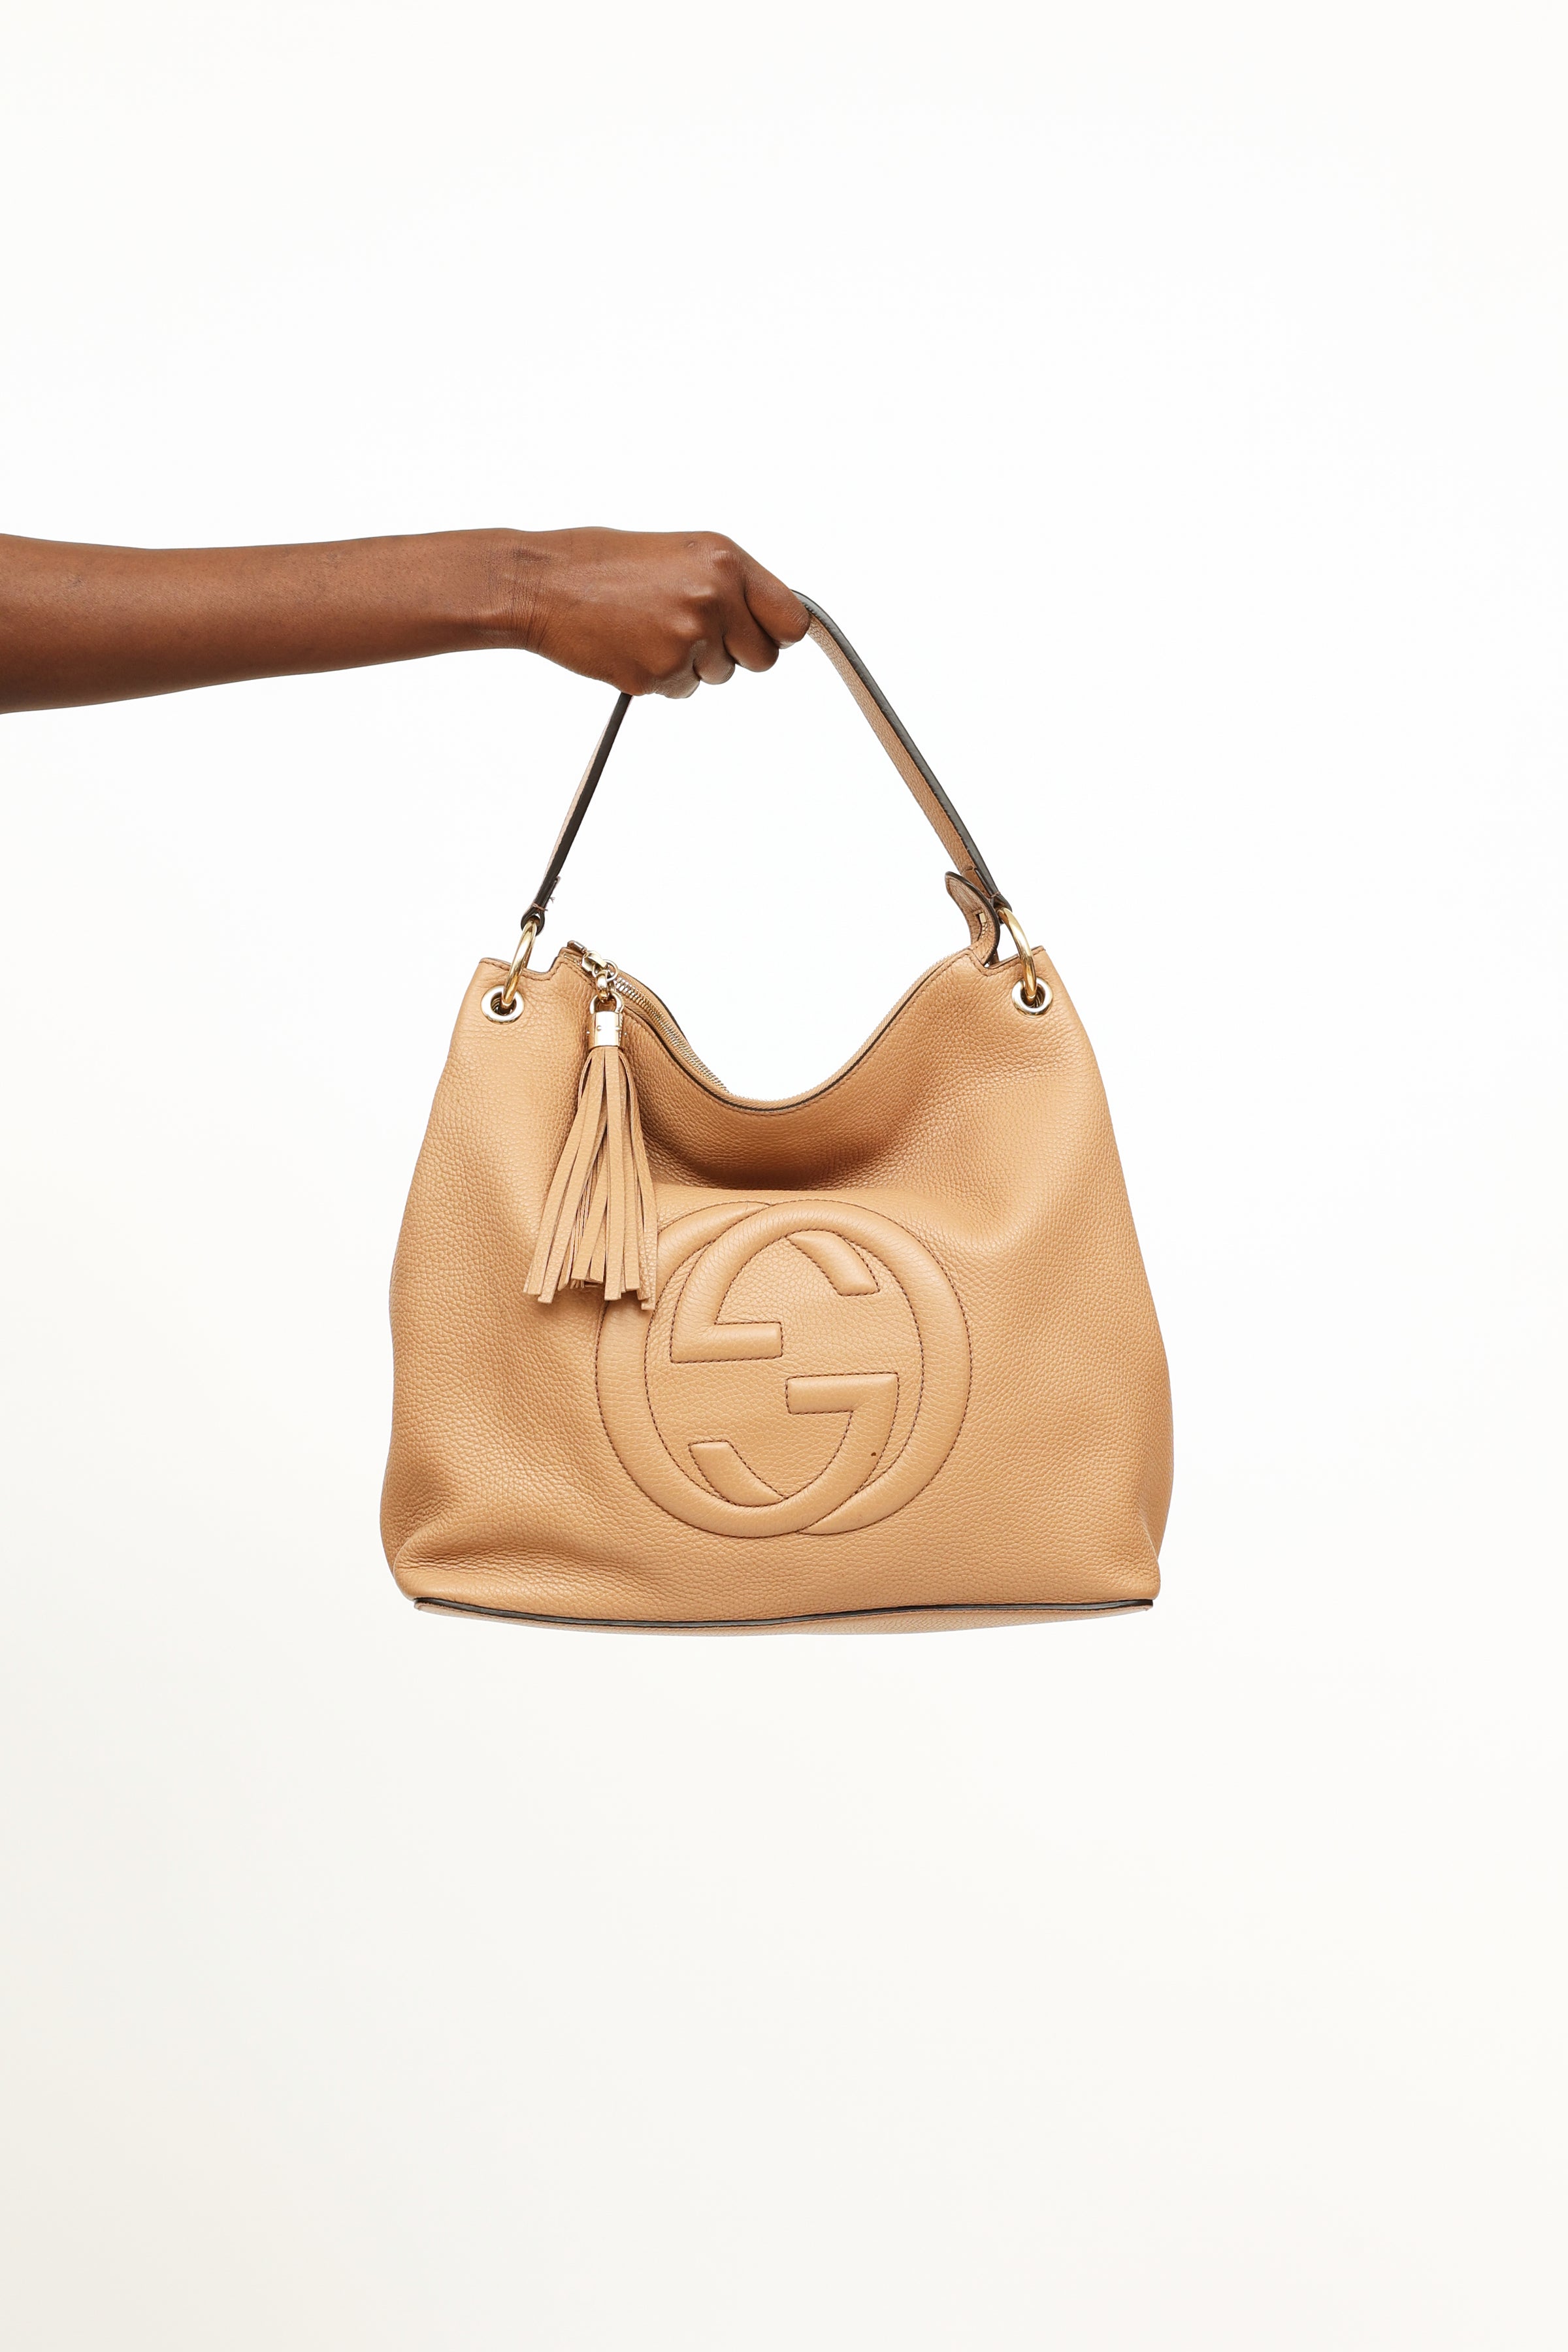 Gucci // Beige Leather Soho Shoulder Bag – VSP Consignment